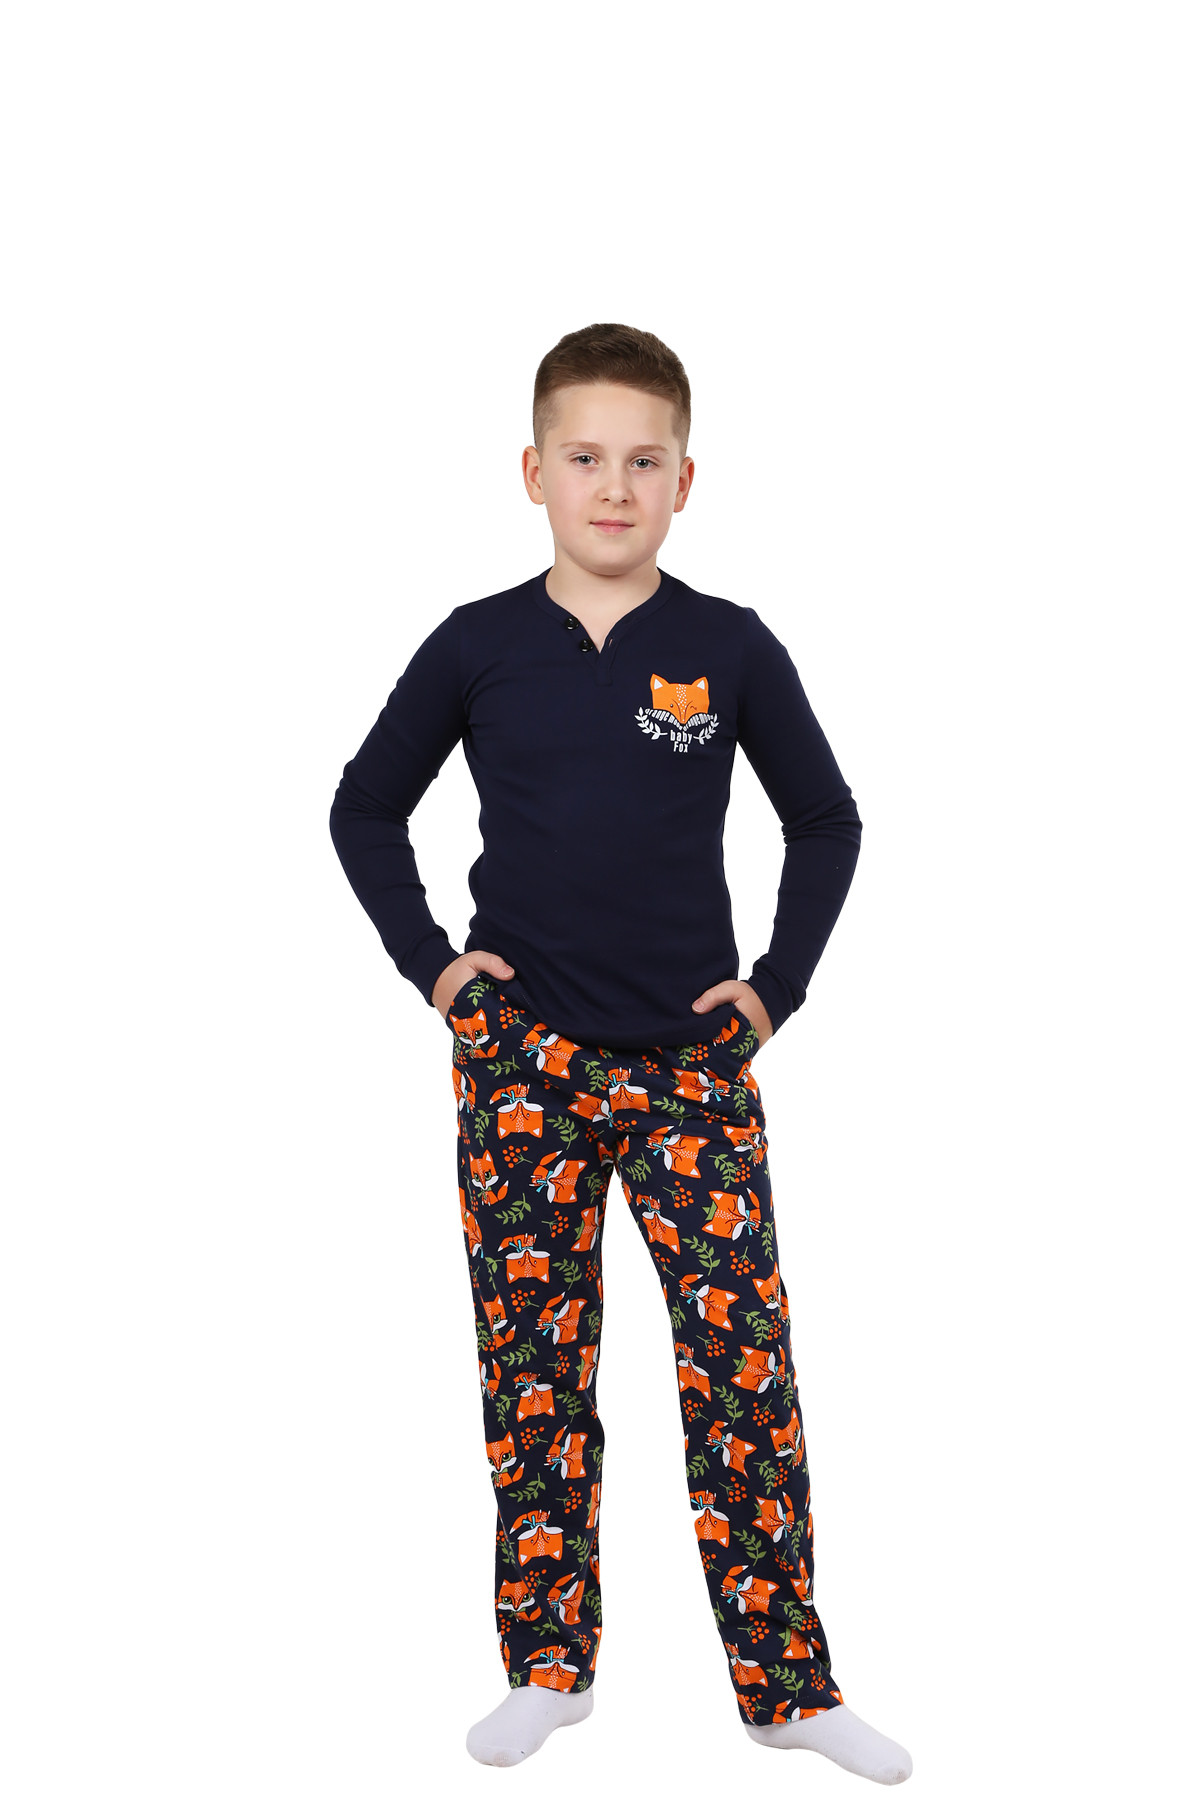 Детская пижама Лисенок Цвет: Темно-Синий (10 лет), размер 10 лет otj640780 Детская пижама Лисенок Цвет: Темно-Синий (10 лет) - фото 1